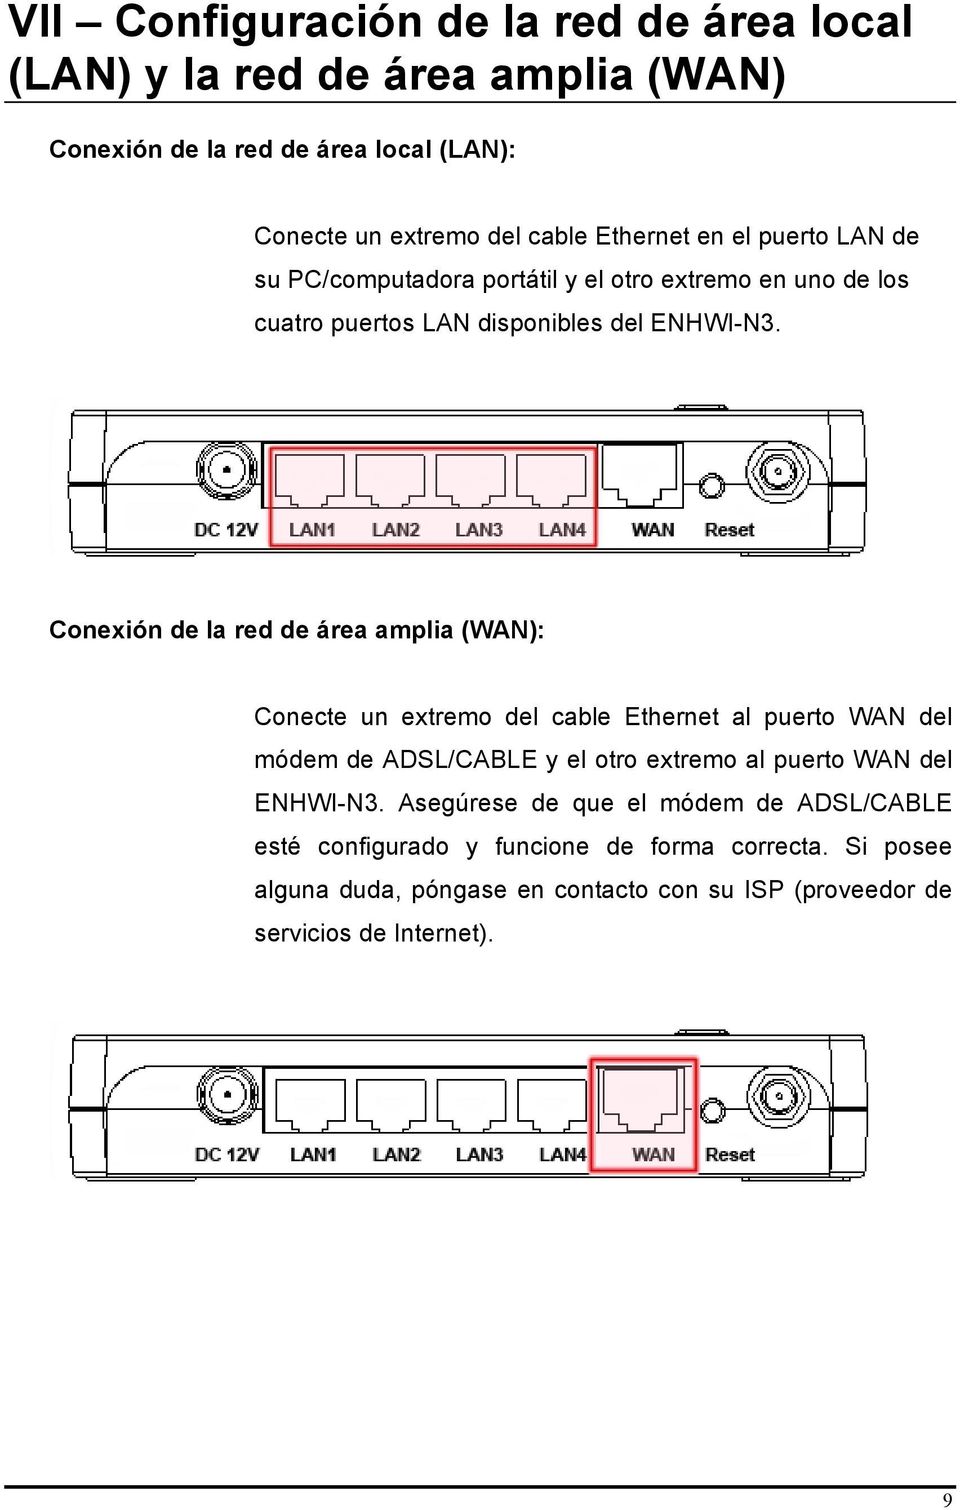 Conexión de la red de área amplia (WAN): Conecte un extremo del cable Ethernet al puerto WAN del módem de ADSL/CABLE y el otro extremo al puerto WAN del